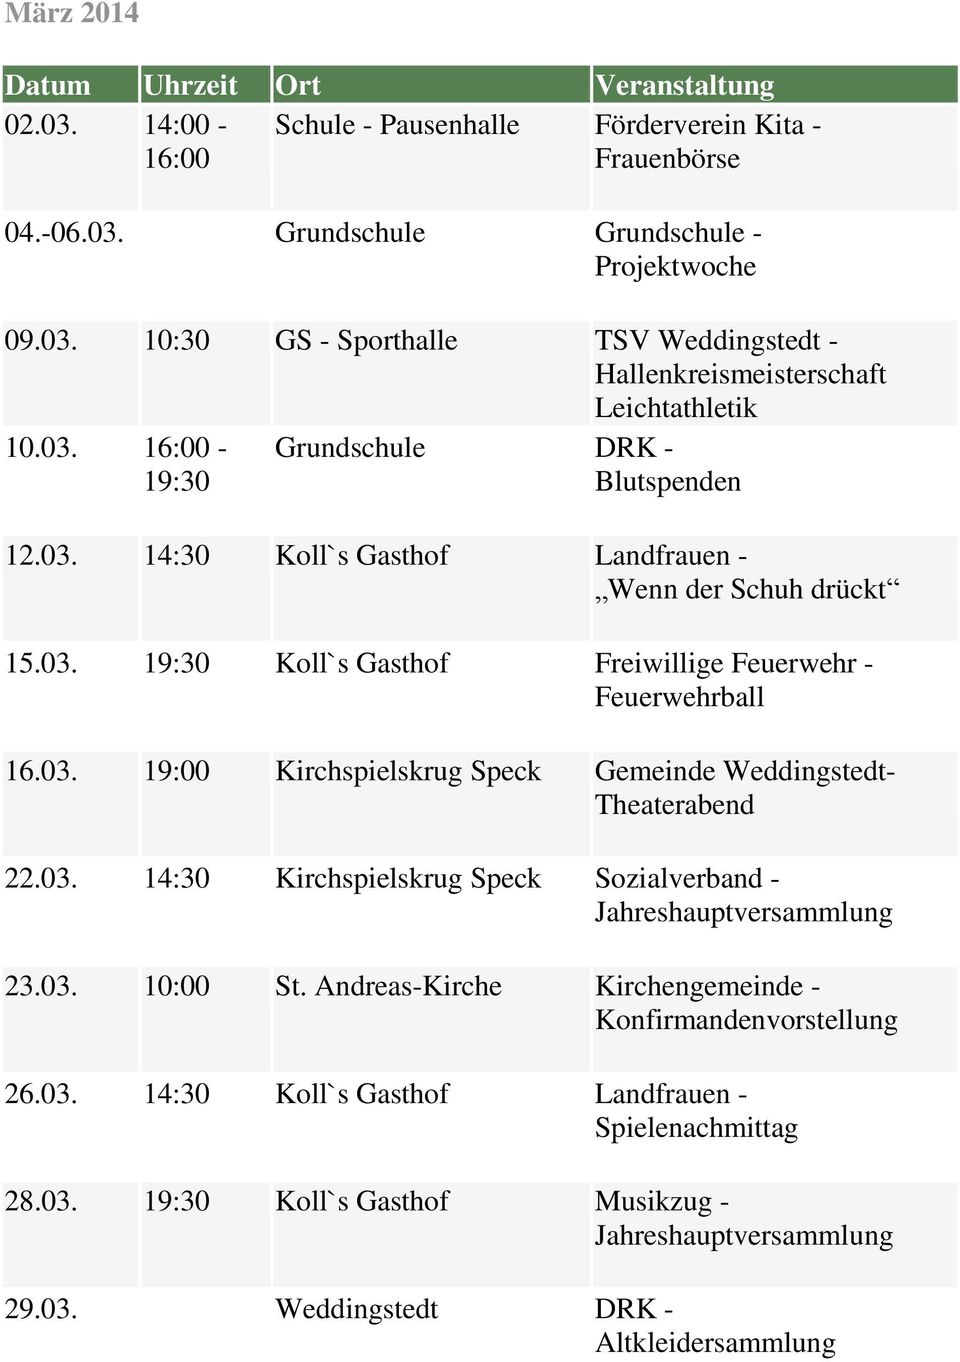 03. 14:30 Kirchspielskrug Speck Sozialverband - 23.03. 10:00 St. Andreas-Kirche Kirchengemeinde - Konfirmandenvorstellung 26.03. 14:30 Koll`s Gasthof Landfrauen - Spielenachmittag 28.